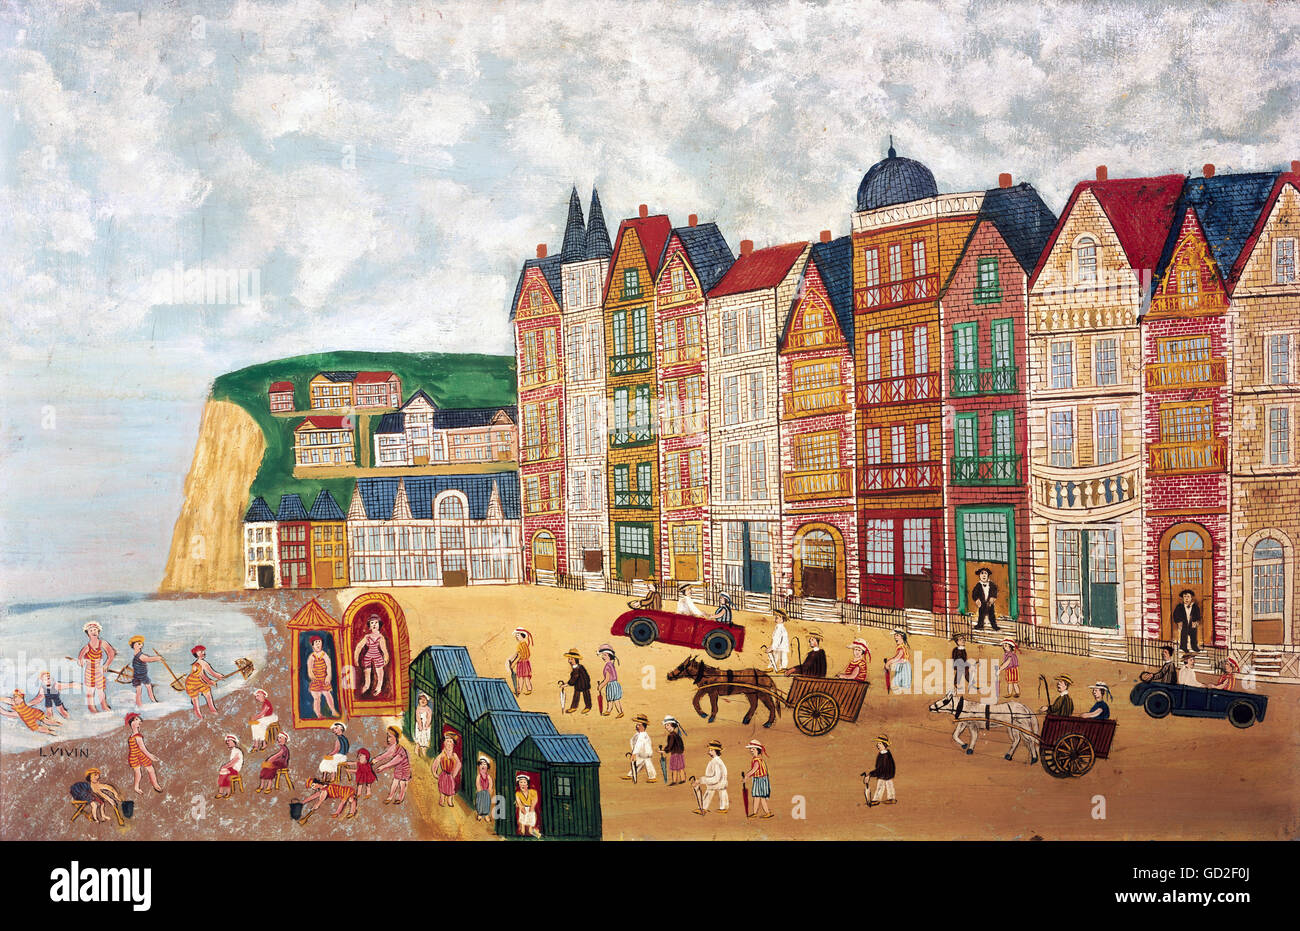 Fine art, viven, Louis (1861 - 1936), peinture, 'Beach', huile sur toile, collection privée, l'artiste n'a pas d'auteur pour être effacé Banque D'Images